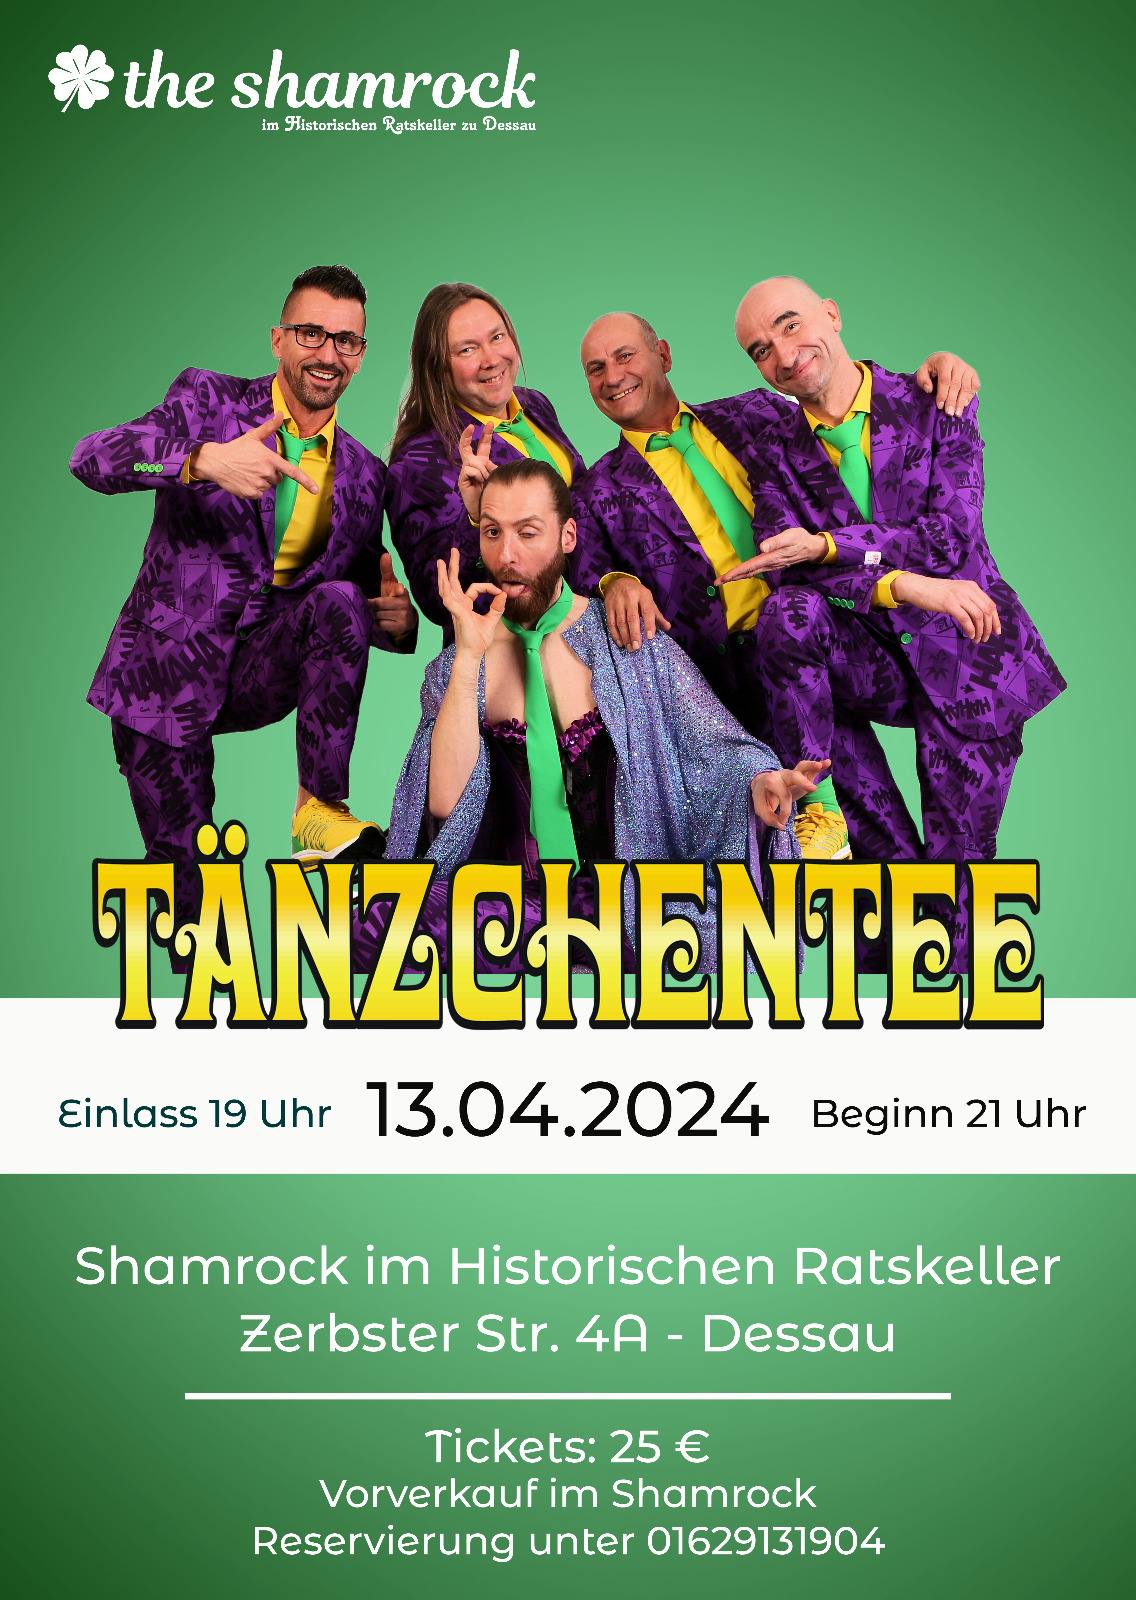 Tänzchentee am 13.04.2024 im the shamrock dessau